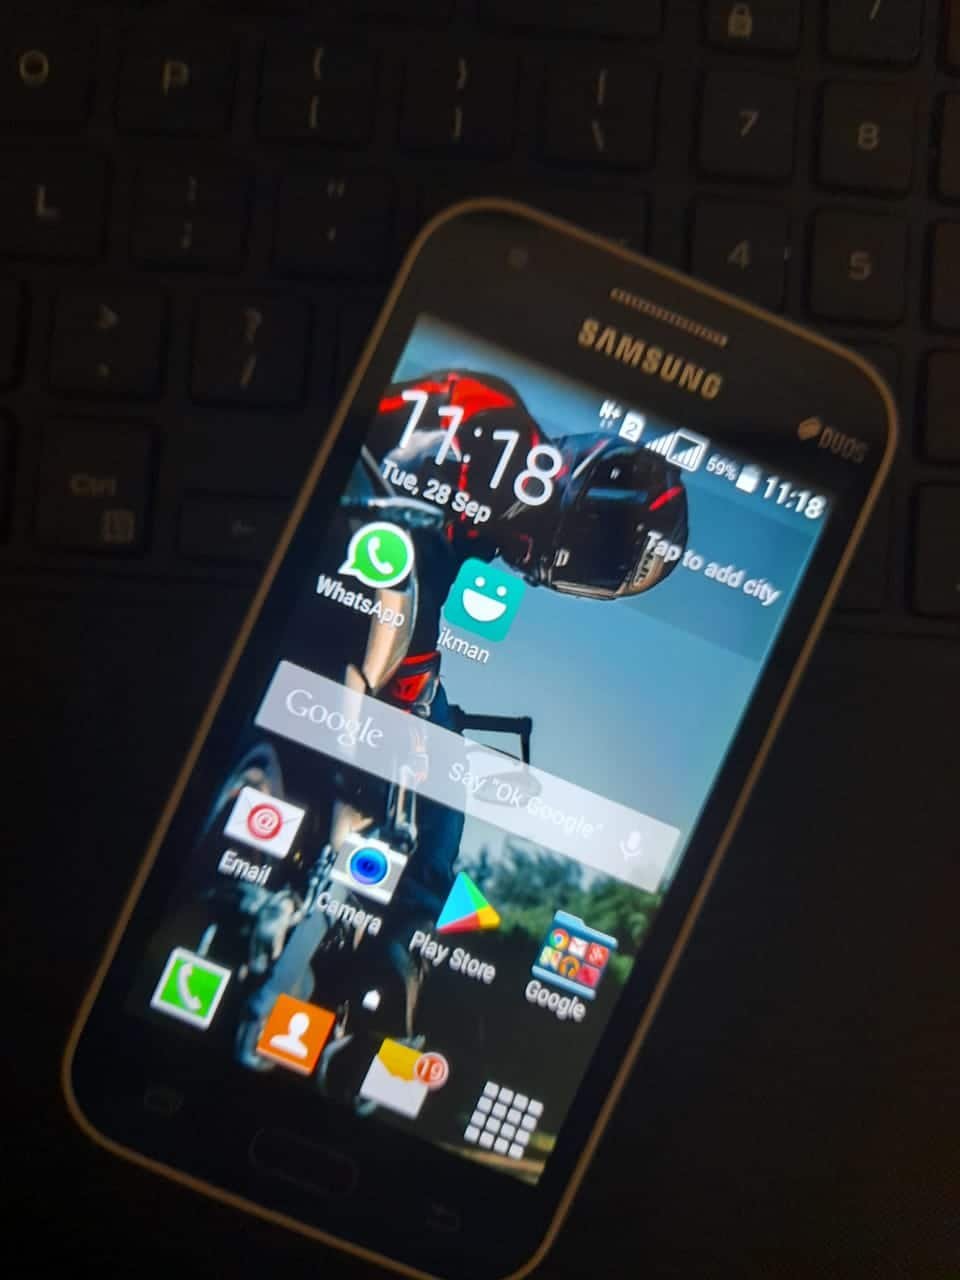 Samsung Galaxy J1 Used